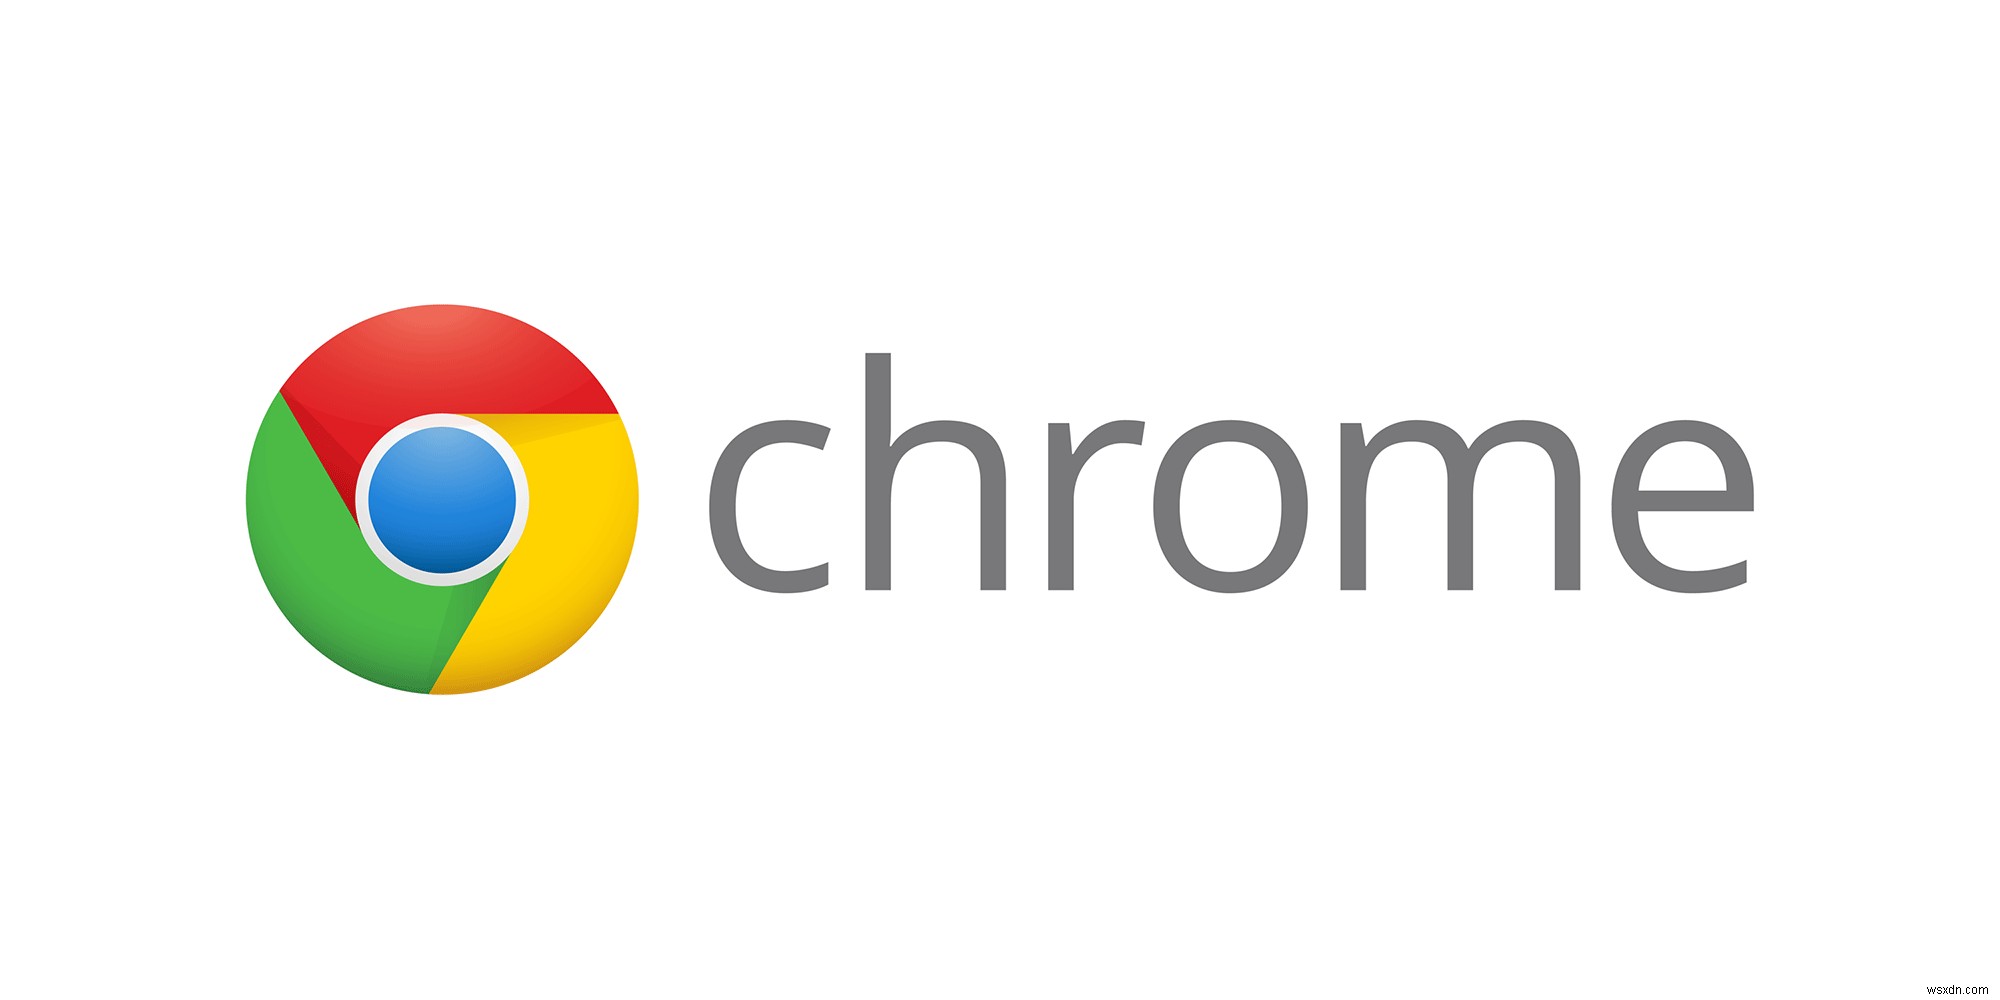 সমাধান:Chrome নতুন ট্যাব খুলতে থাকে